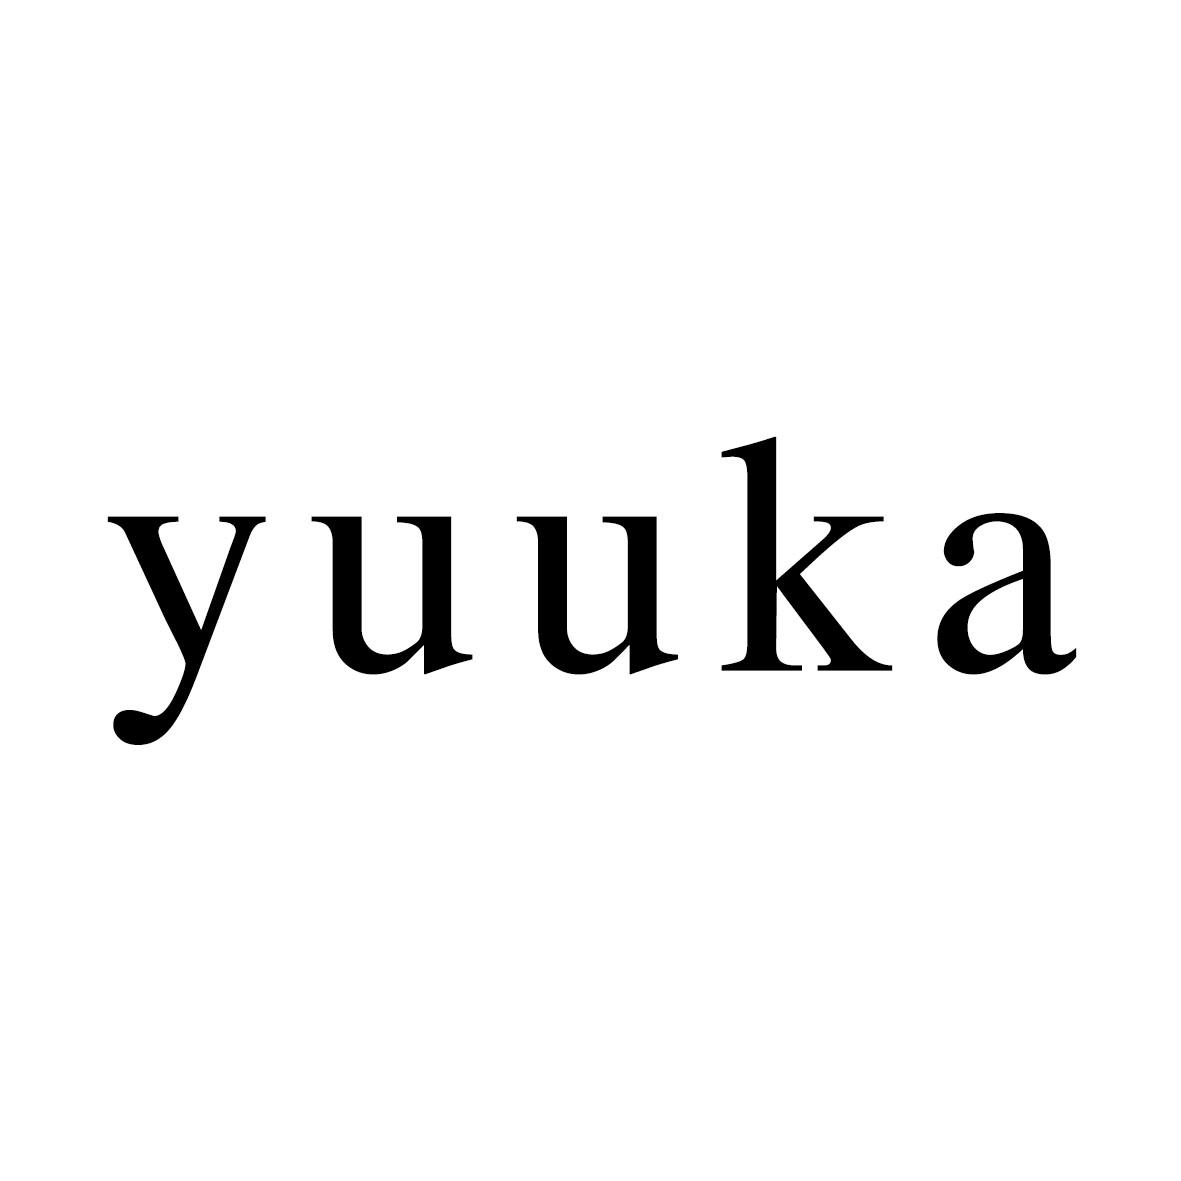 商标文字yuuka商标注册号 19427915,商标申请人圣珂兰投资有限公司的